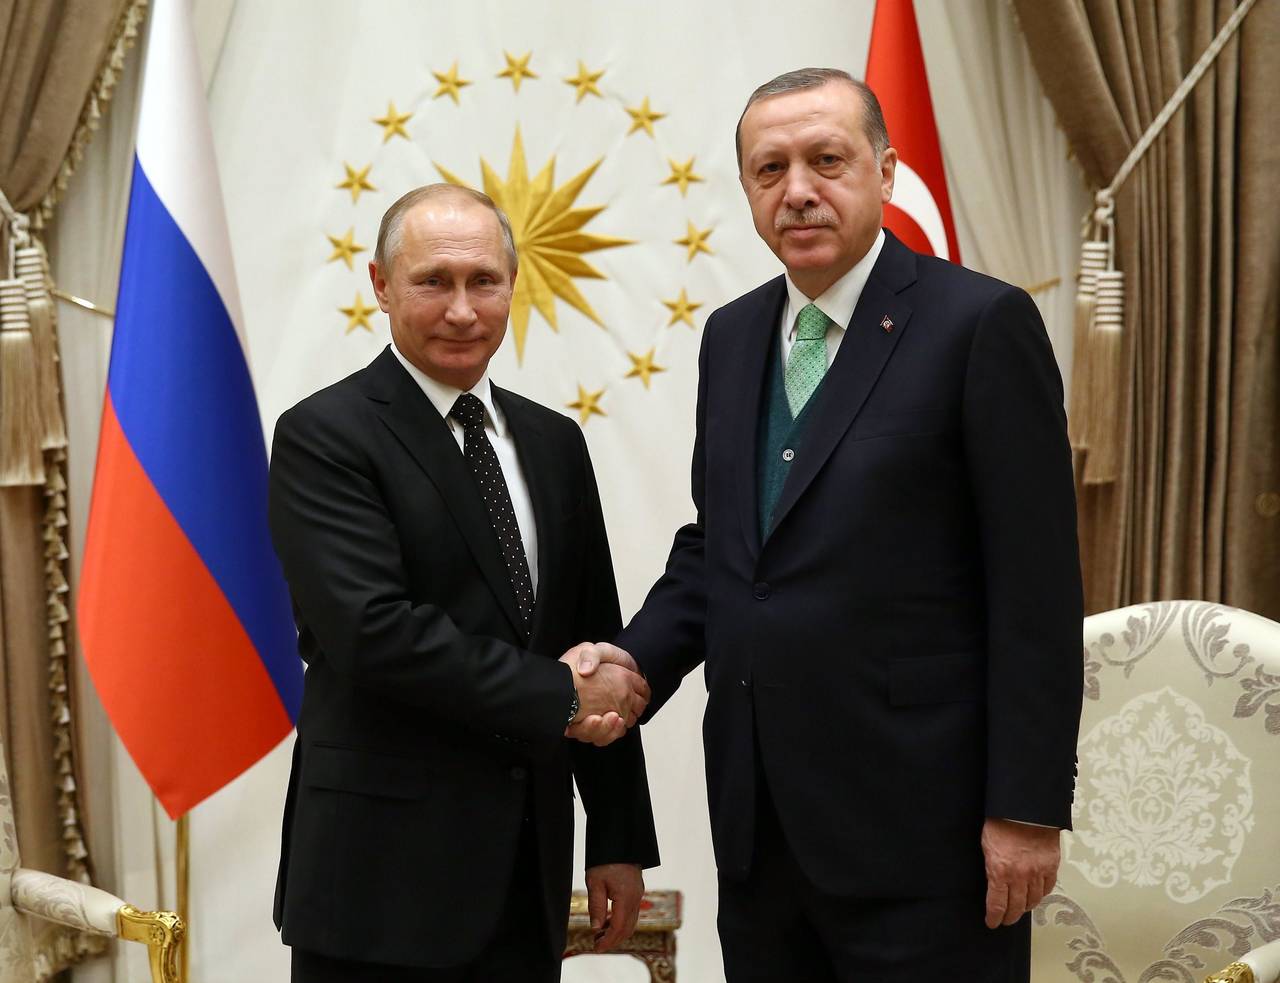 Acuerdo. Putin visitó a Erdogan en Ankara, Turquía. (EFE)